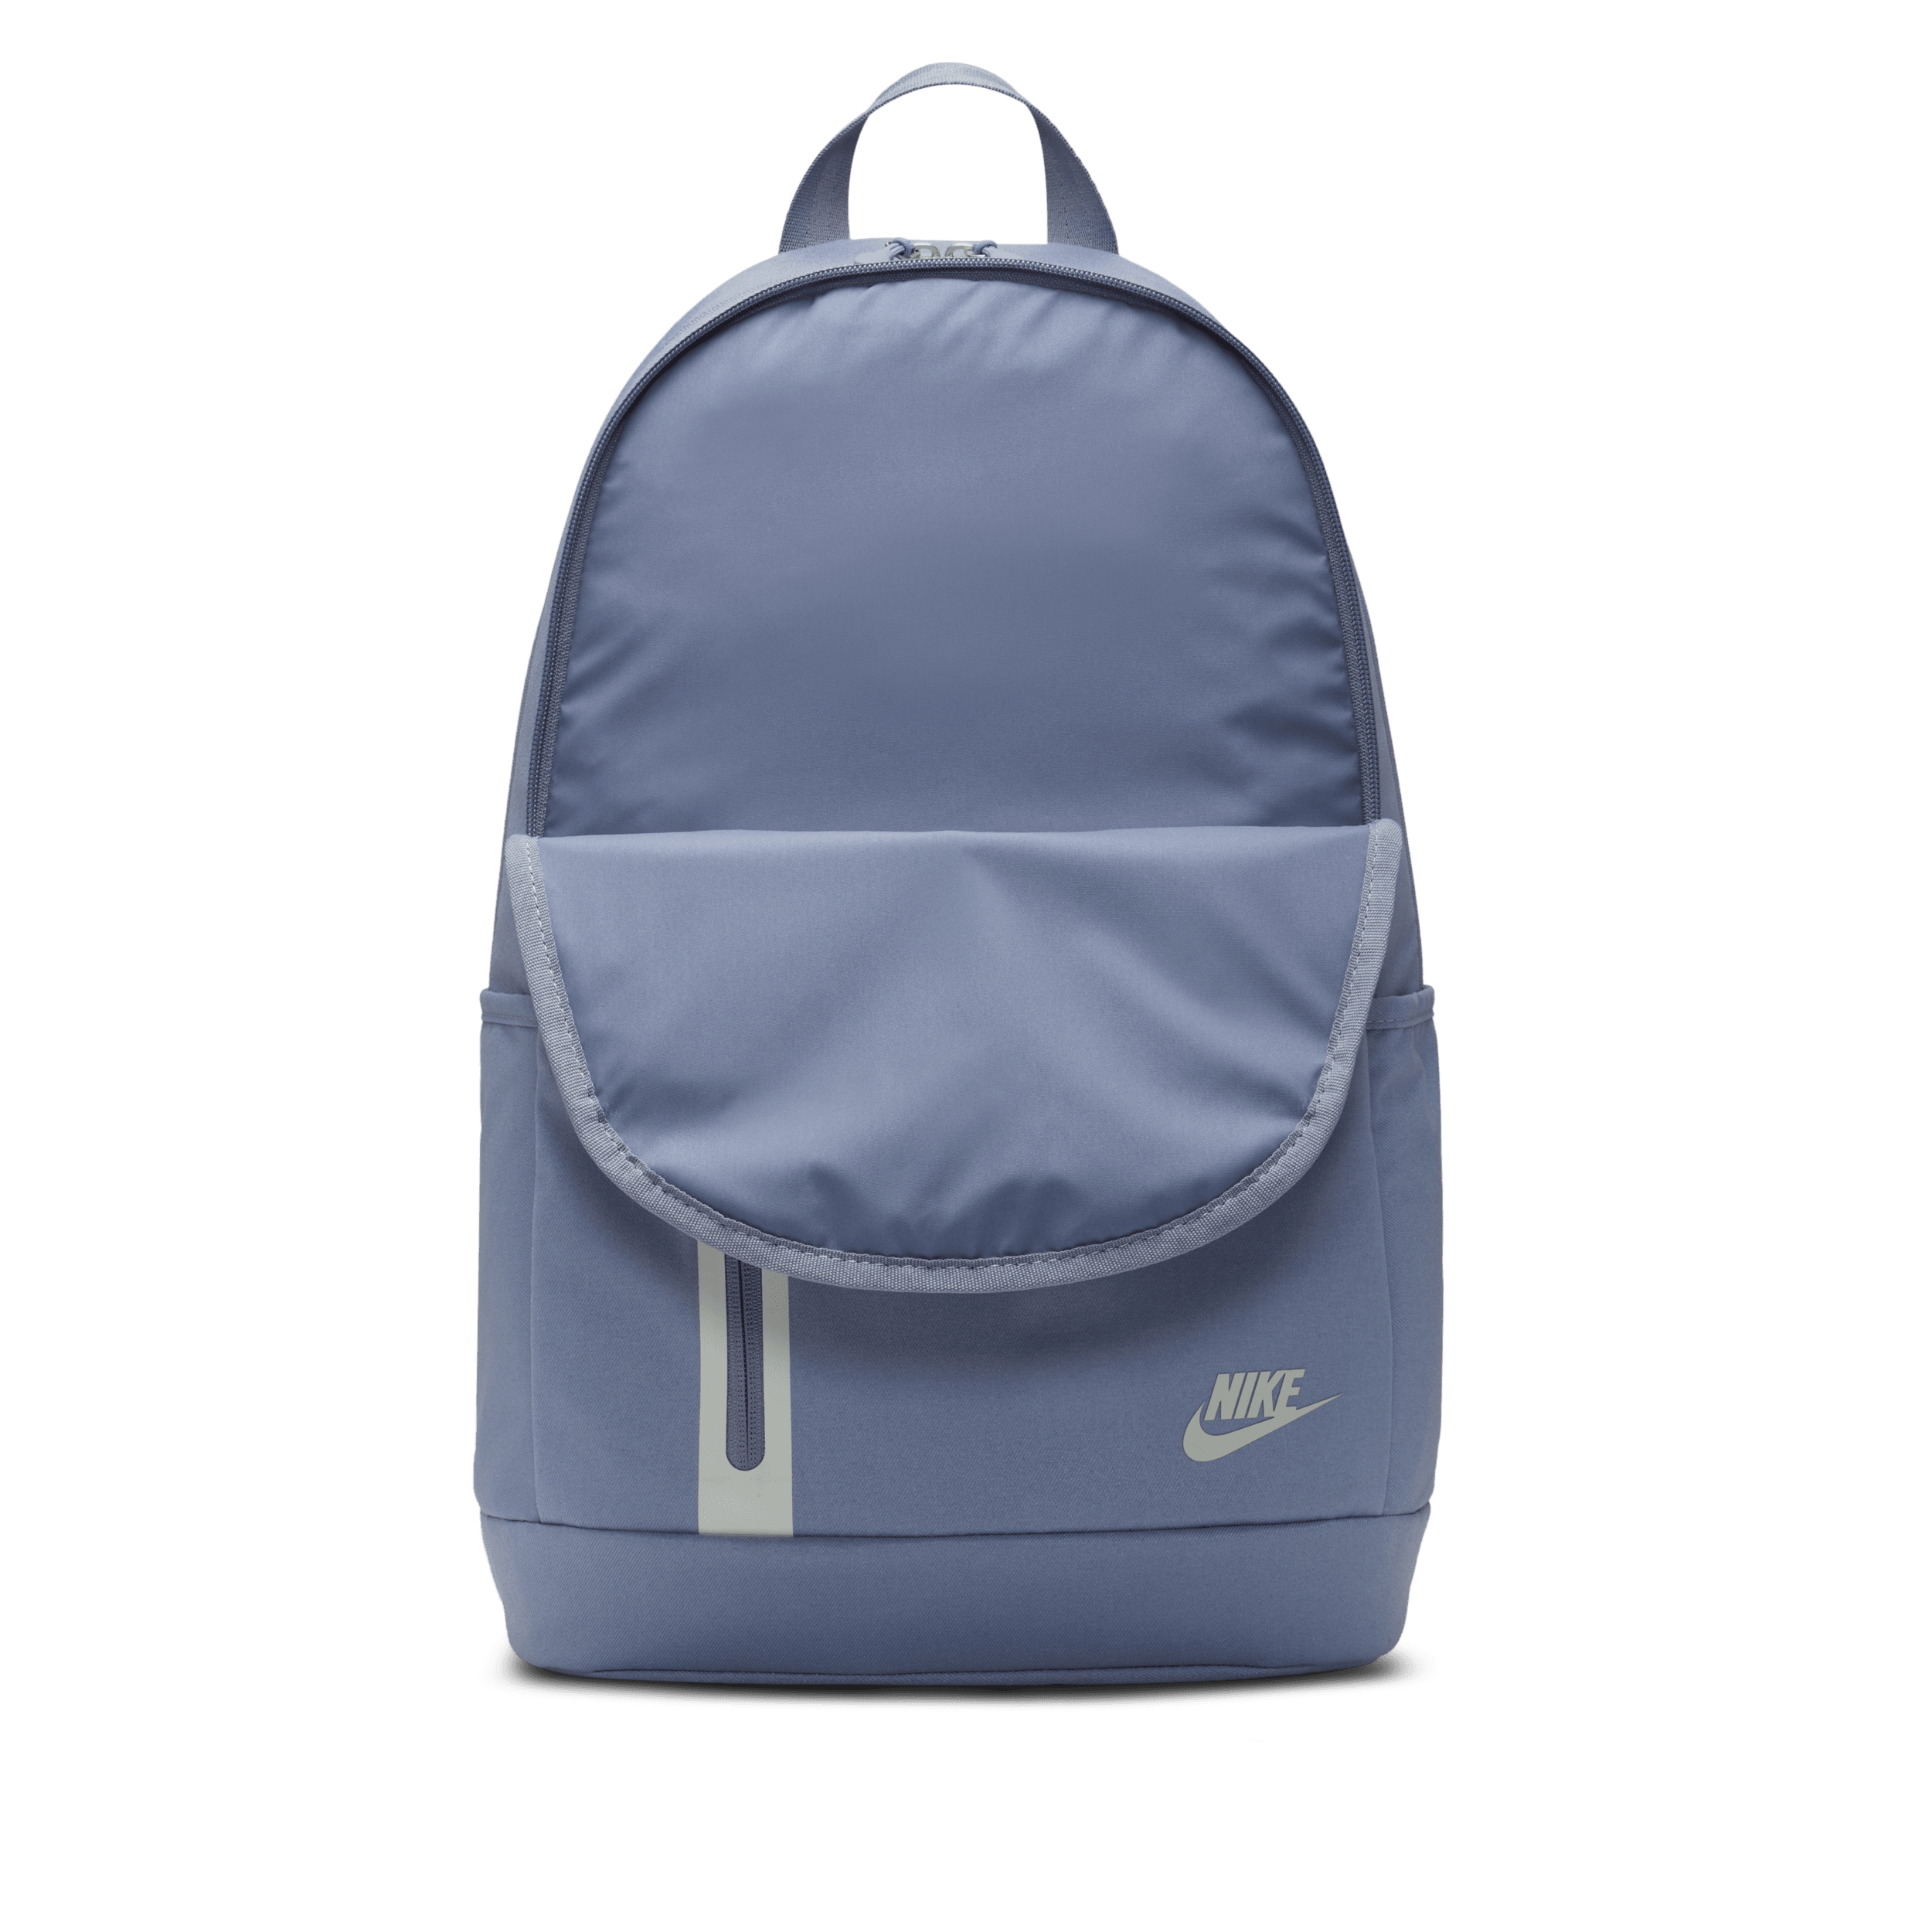 Nike Elemental Premium Rugzak (21 liter) Blauw